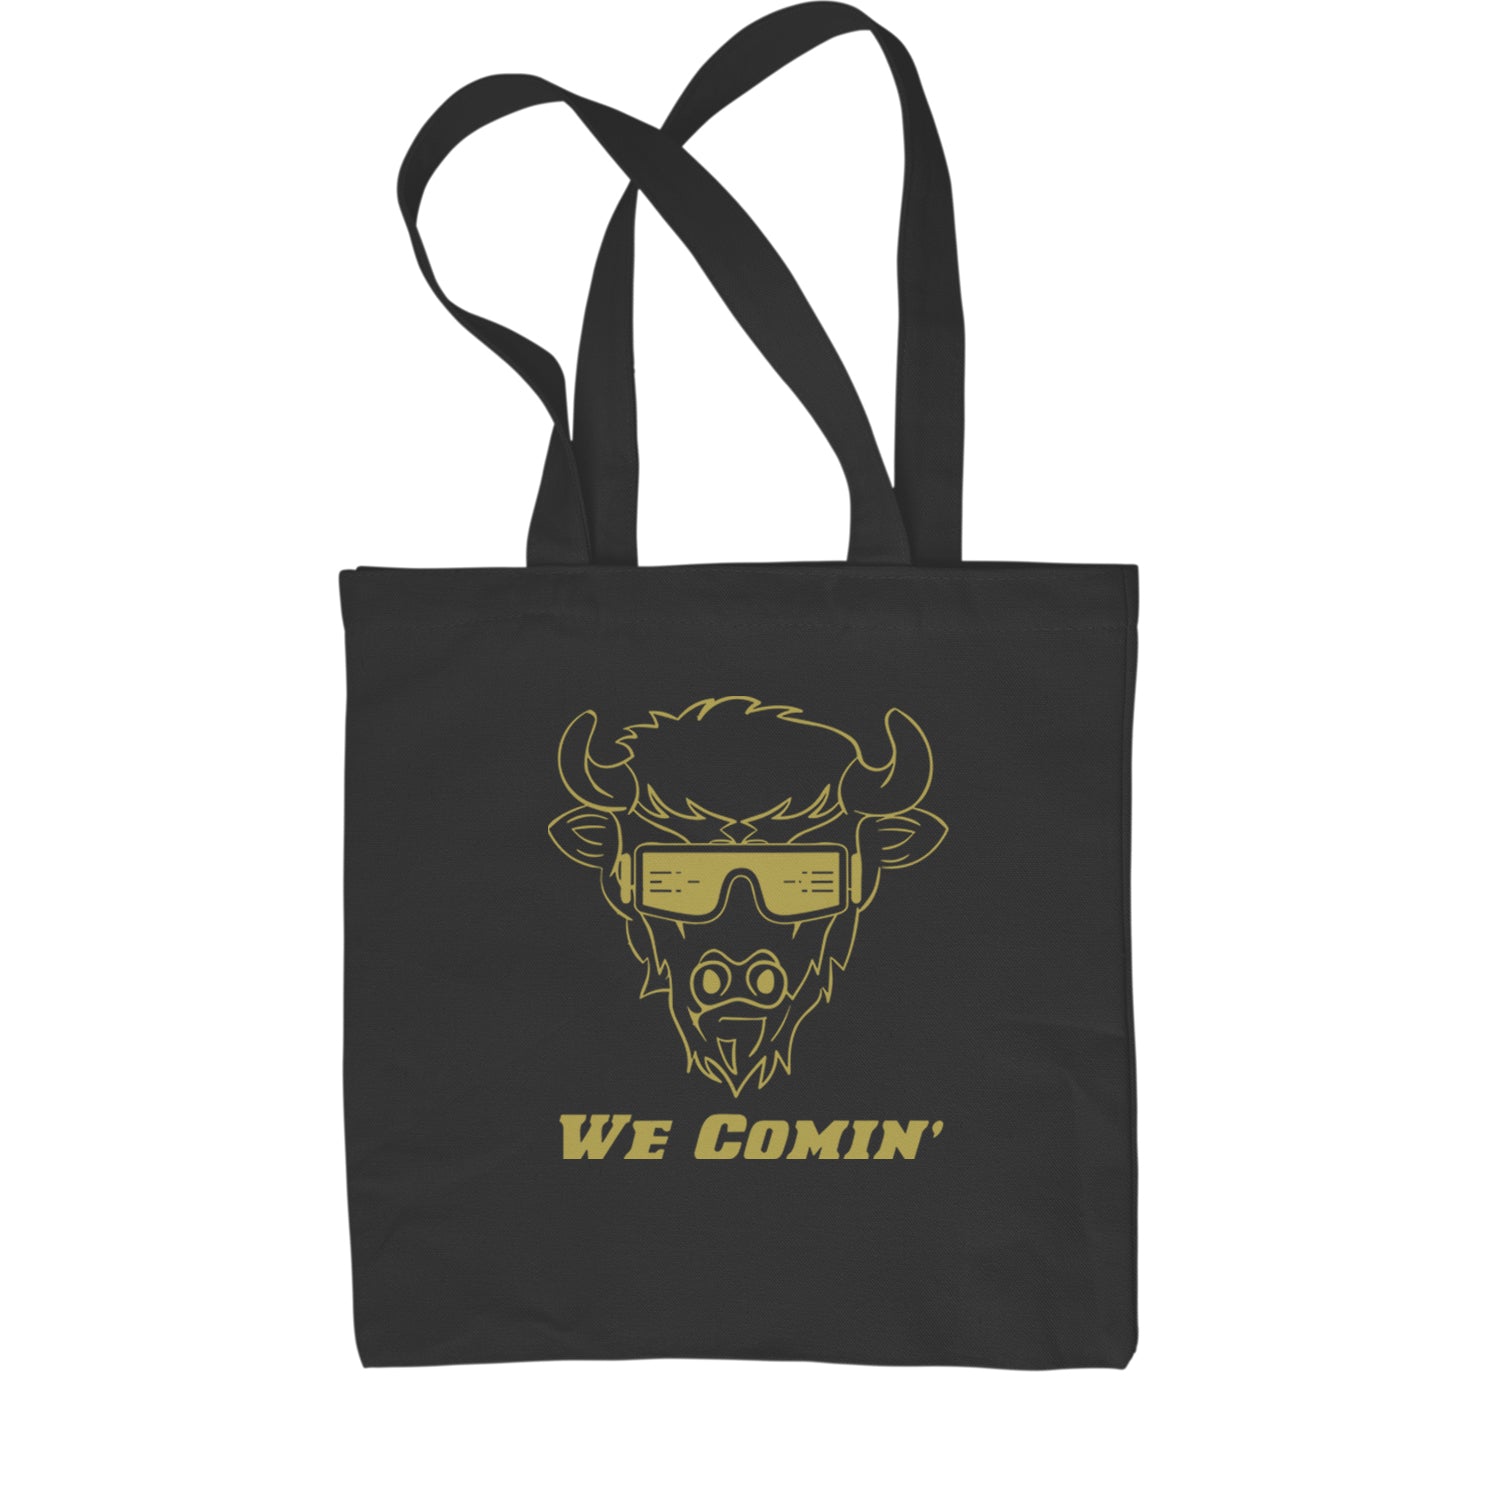 We Coming Coach Prime Colorado Shopping Tote Bag